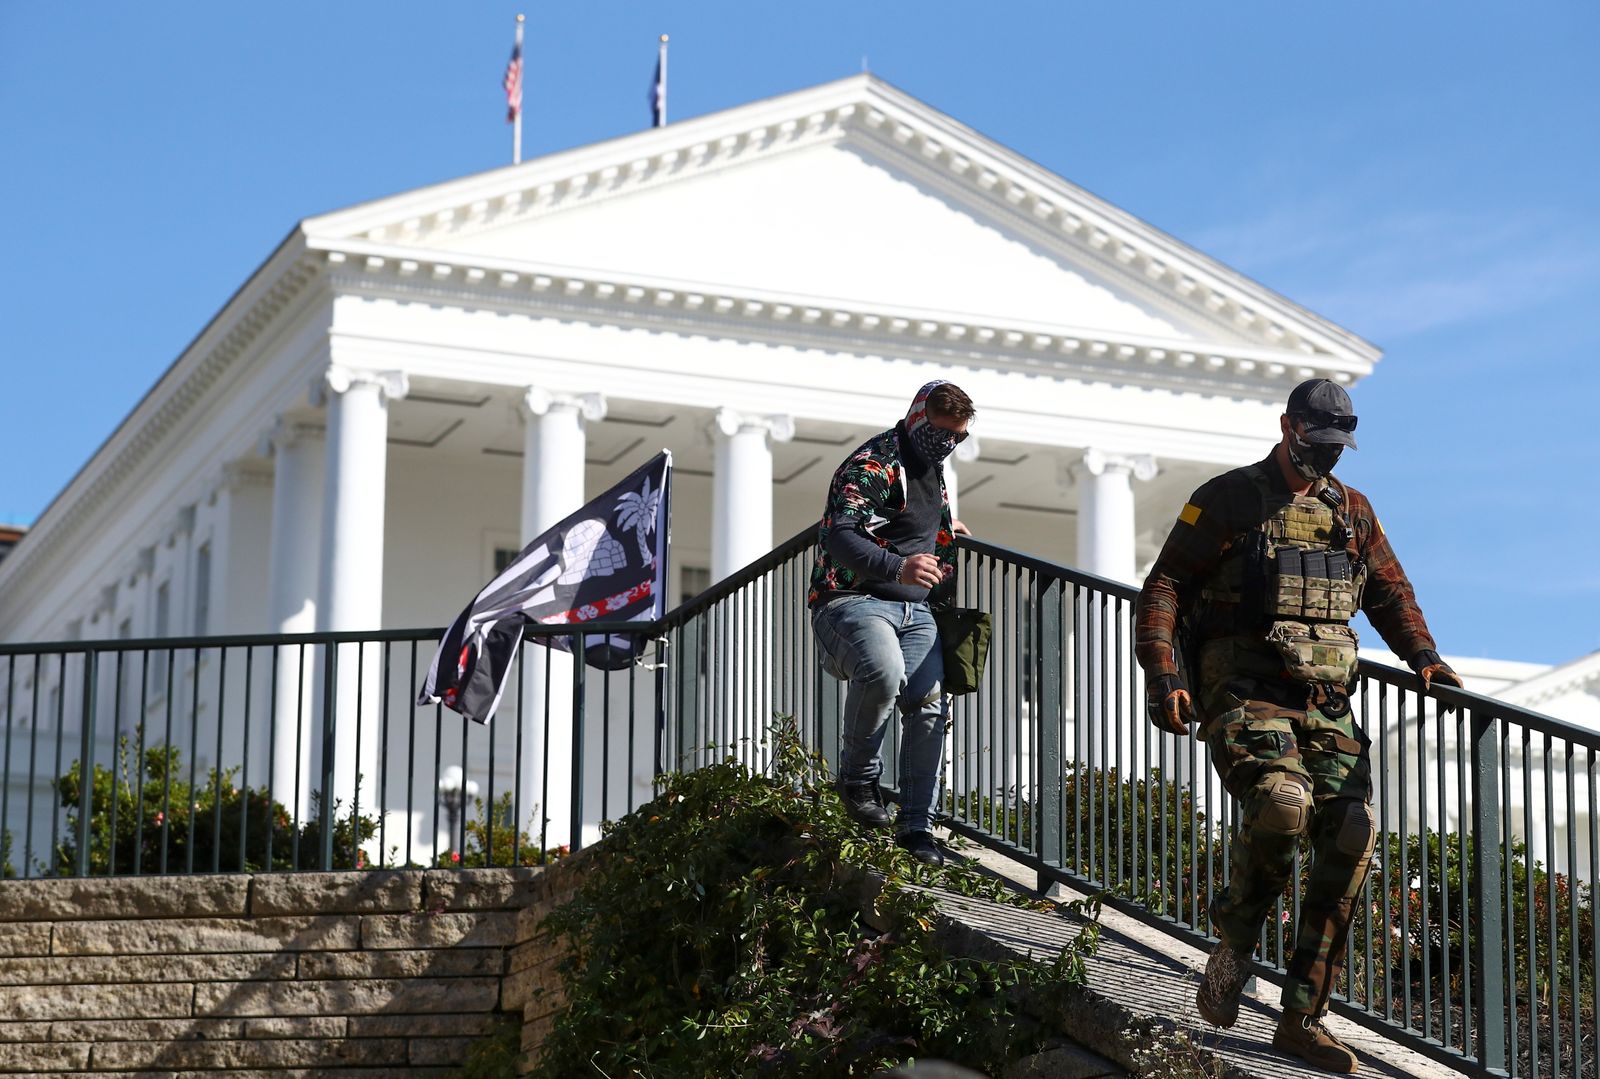 عضوان من حركة بوفالو خلال مسيرة مؤيدة لحمل السلاح بالقرب من مبنى الكابيتول بولاية فرجينيا في ريتشموند 21 نوفمبر 2020 - REUTERS